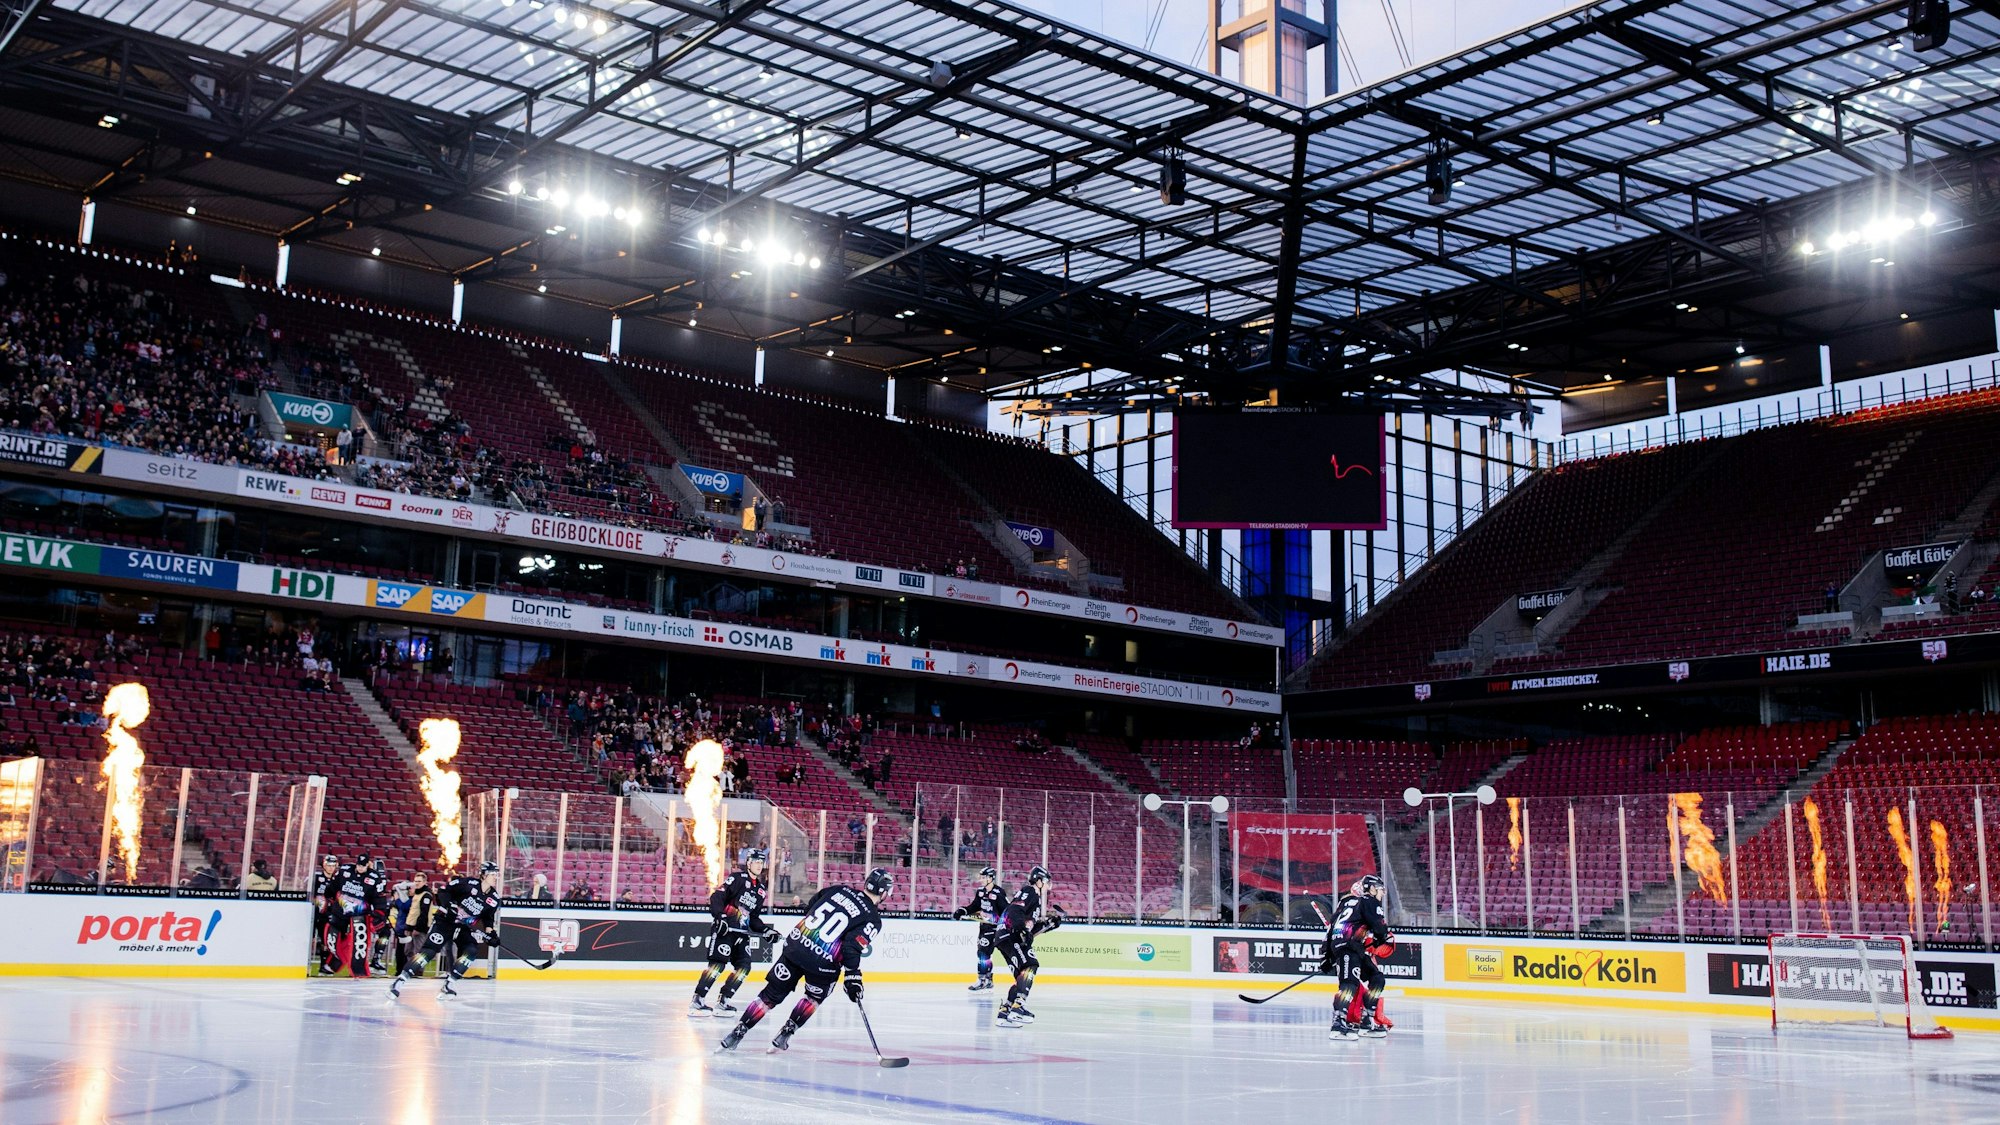 Köln: Eishockey: DEL, Kölner Haie - Augsburger Panther, Hauptrunde, 41. Spieltag, RheinEnergieStadion. Die Kölner Spieler kommen auf das Eis. Foto: Rolf Vennenbernd/dpa +++ dpa-Bildfunk +++